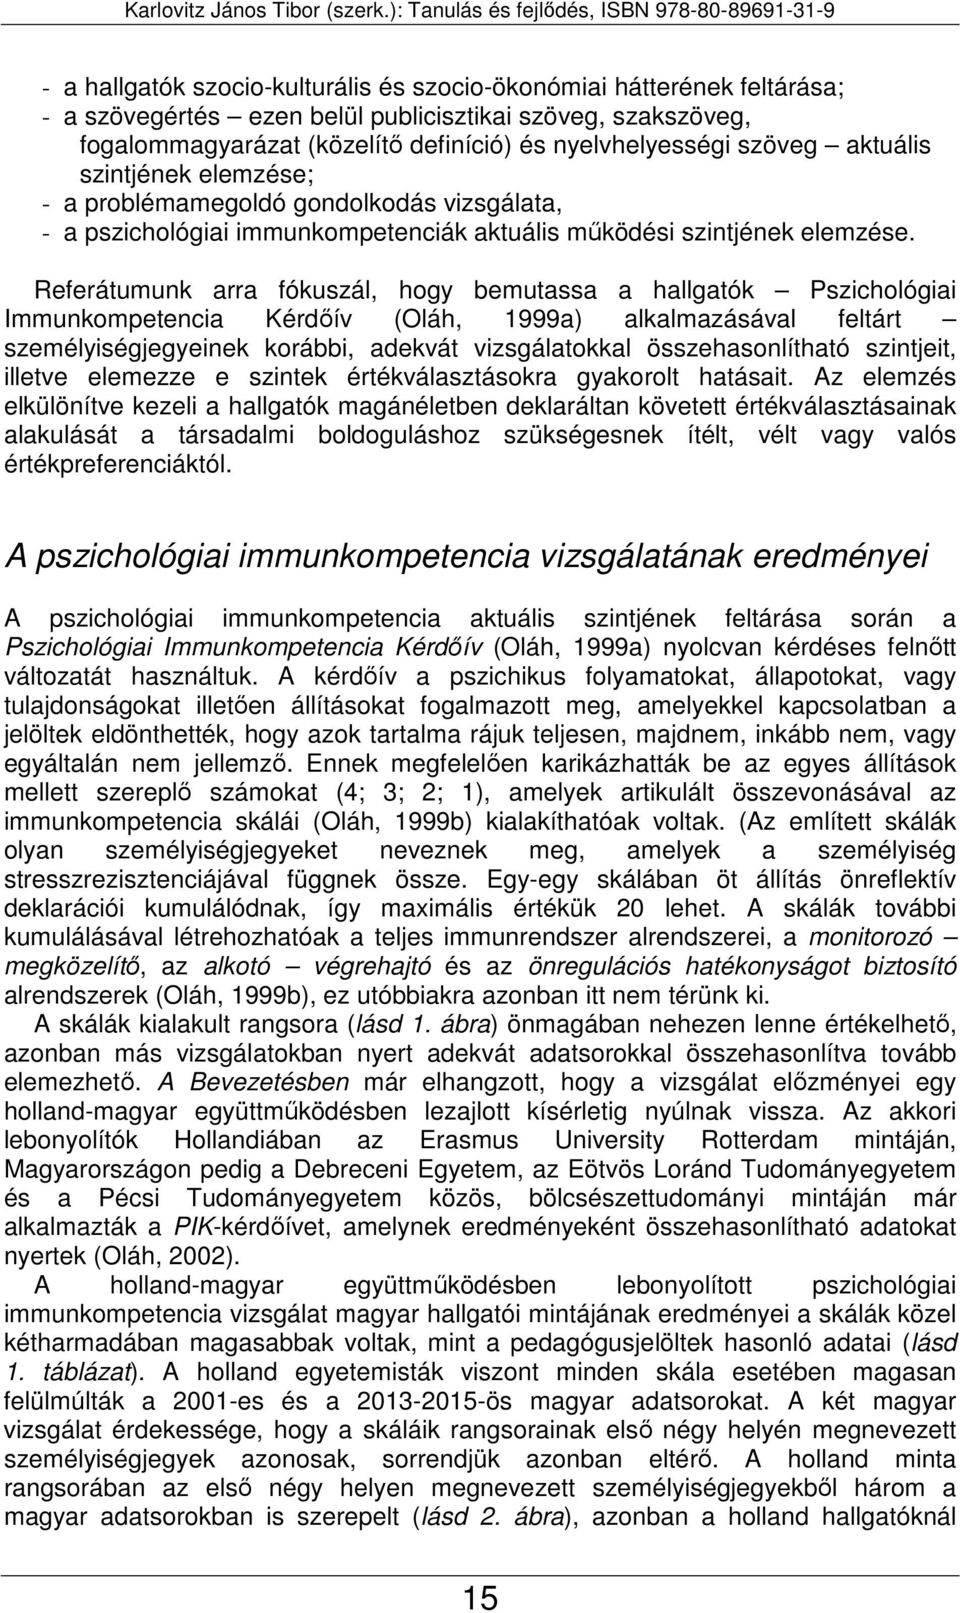 Referátumunk arra fókuszál, hogy bemutassa a hallgatók Pszichológiai Immunkompetencia Kérdőív (Oláh, 1999a) alkalmazásával feltárt személyiségjegyeinek korábbi, adekvát vizsgálatokkal